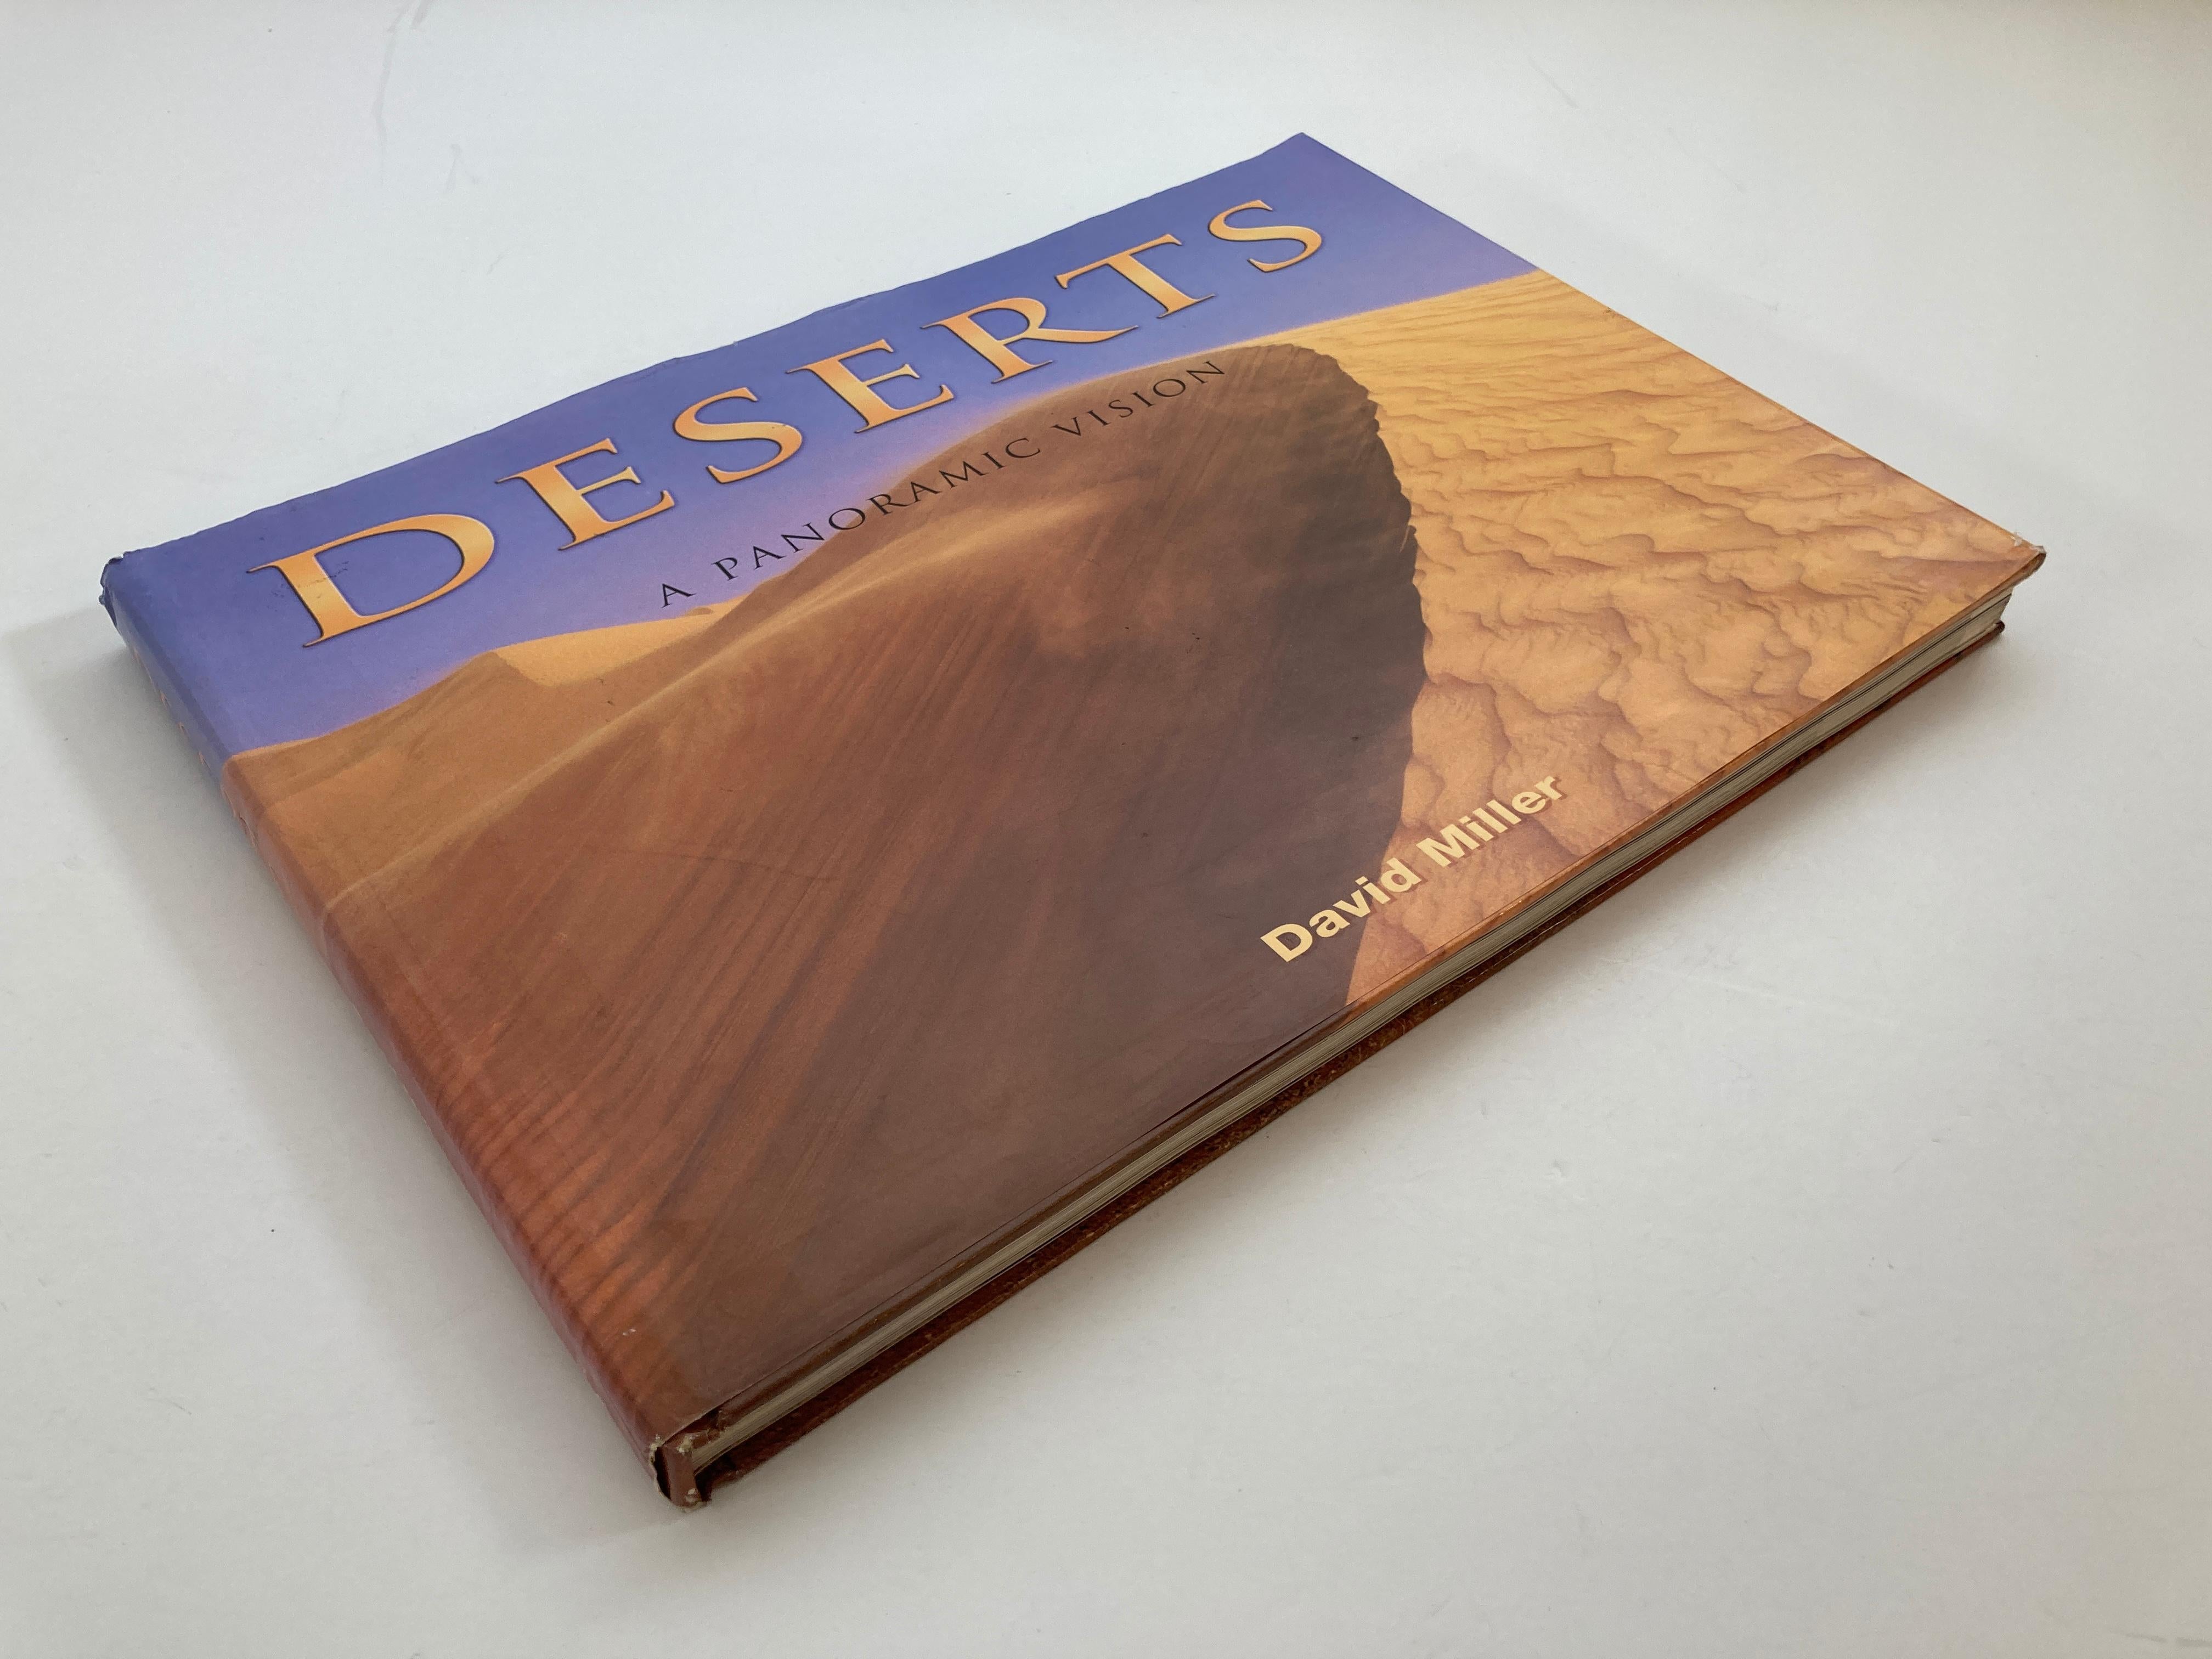 Wüsten: Eine Panoramavision von David Miller Großes gebundenes Buch.
Erforsche die Welt der Wüste und entdecke die Schönheit, die dort zu finden ist!
Dies ist ein schönes großes Buch für die Bibliothek oder den Kaffeetisch.